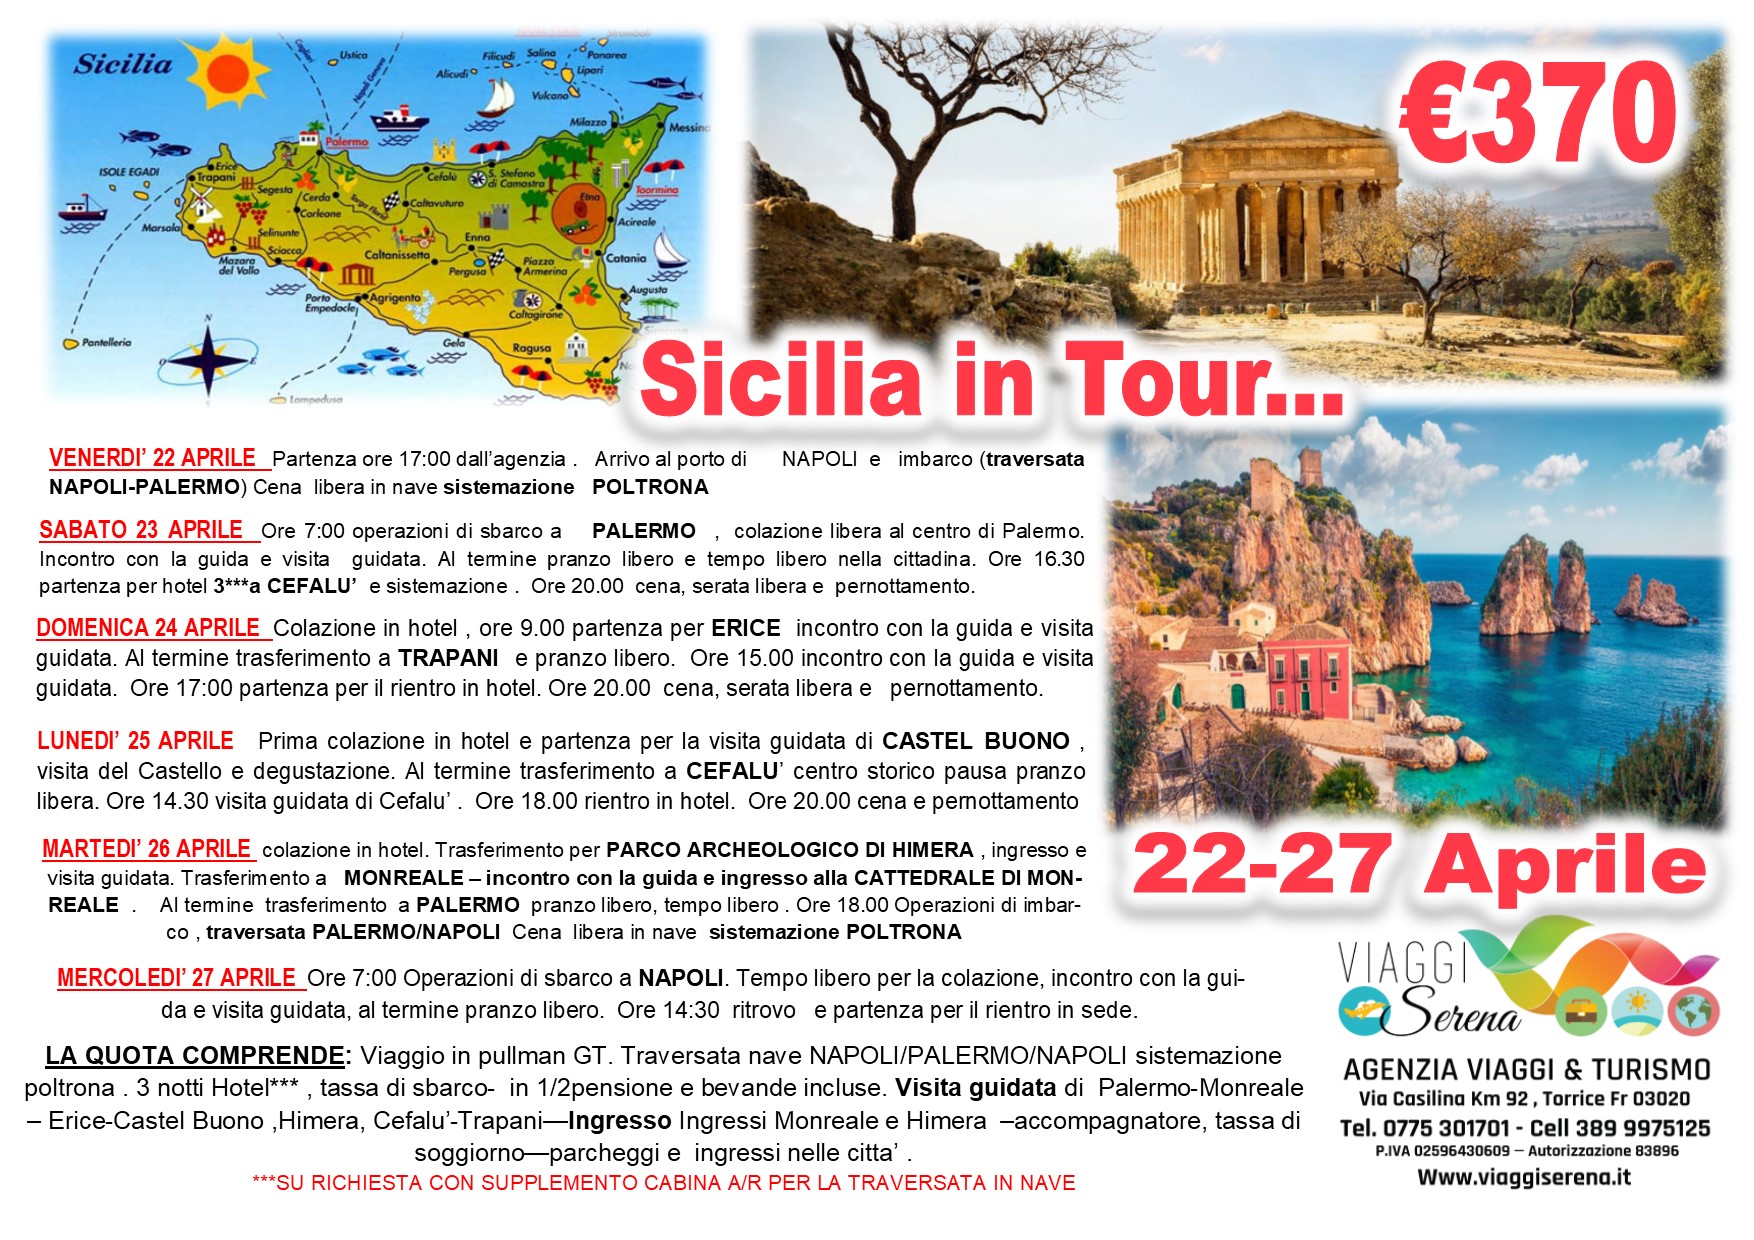 Viaggi di Gruppo: Sicilia in Tour “Monreale, Palermo, Erice , Cefalu’ e Trapani” 22-27 Aprile € 370,00